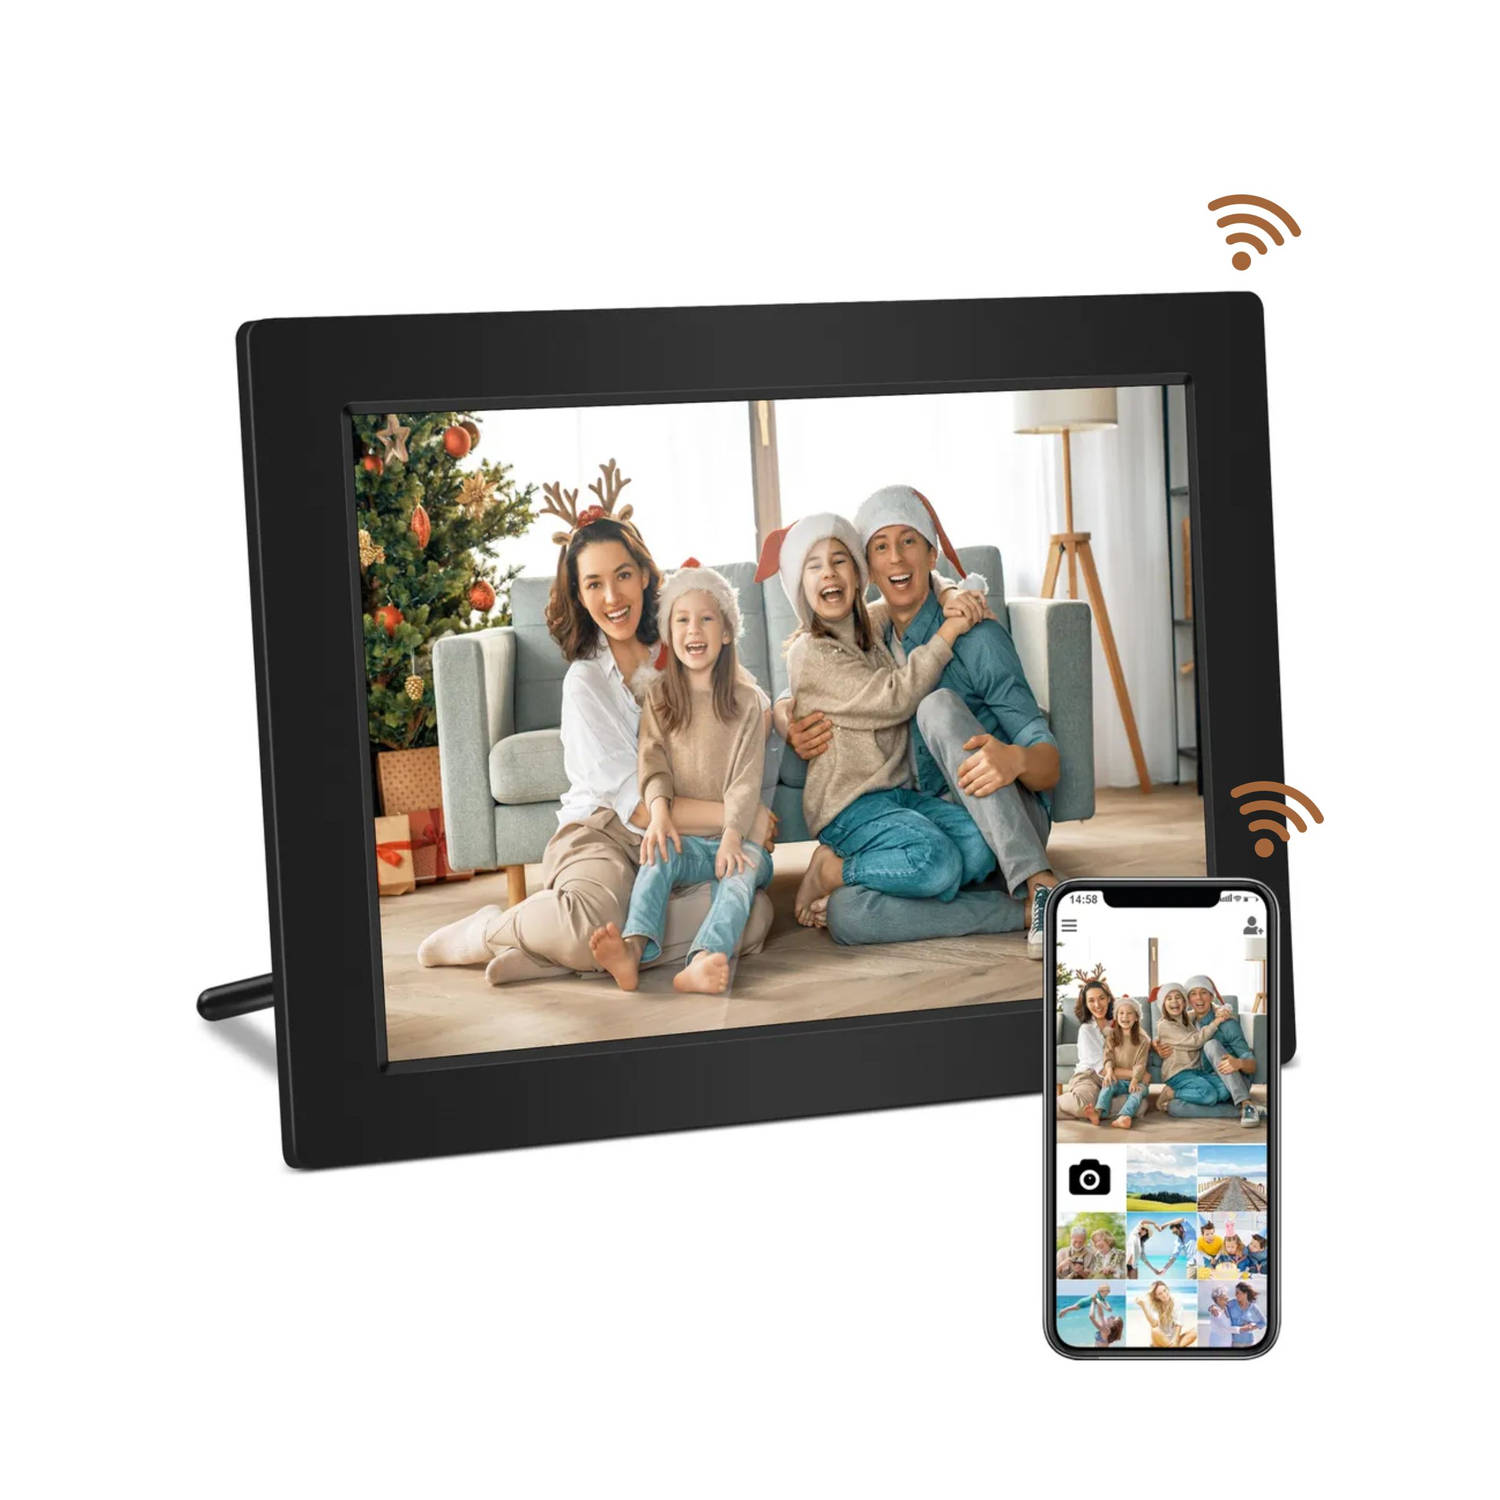 Homezie Digitale fotolijst - Frameo app - 16GB interne opslagruimte - Zeer hoge resolutie 1280*800 scherm - 10 inch Touchscreen scherm - Vernieuwd HD IPS Scherm - Digitale fotolijs